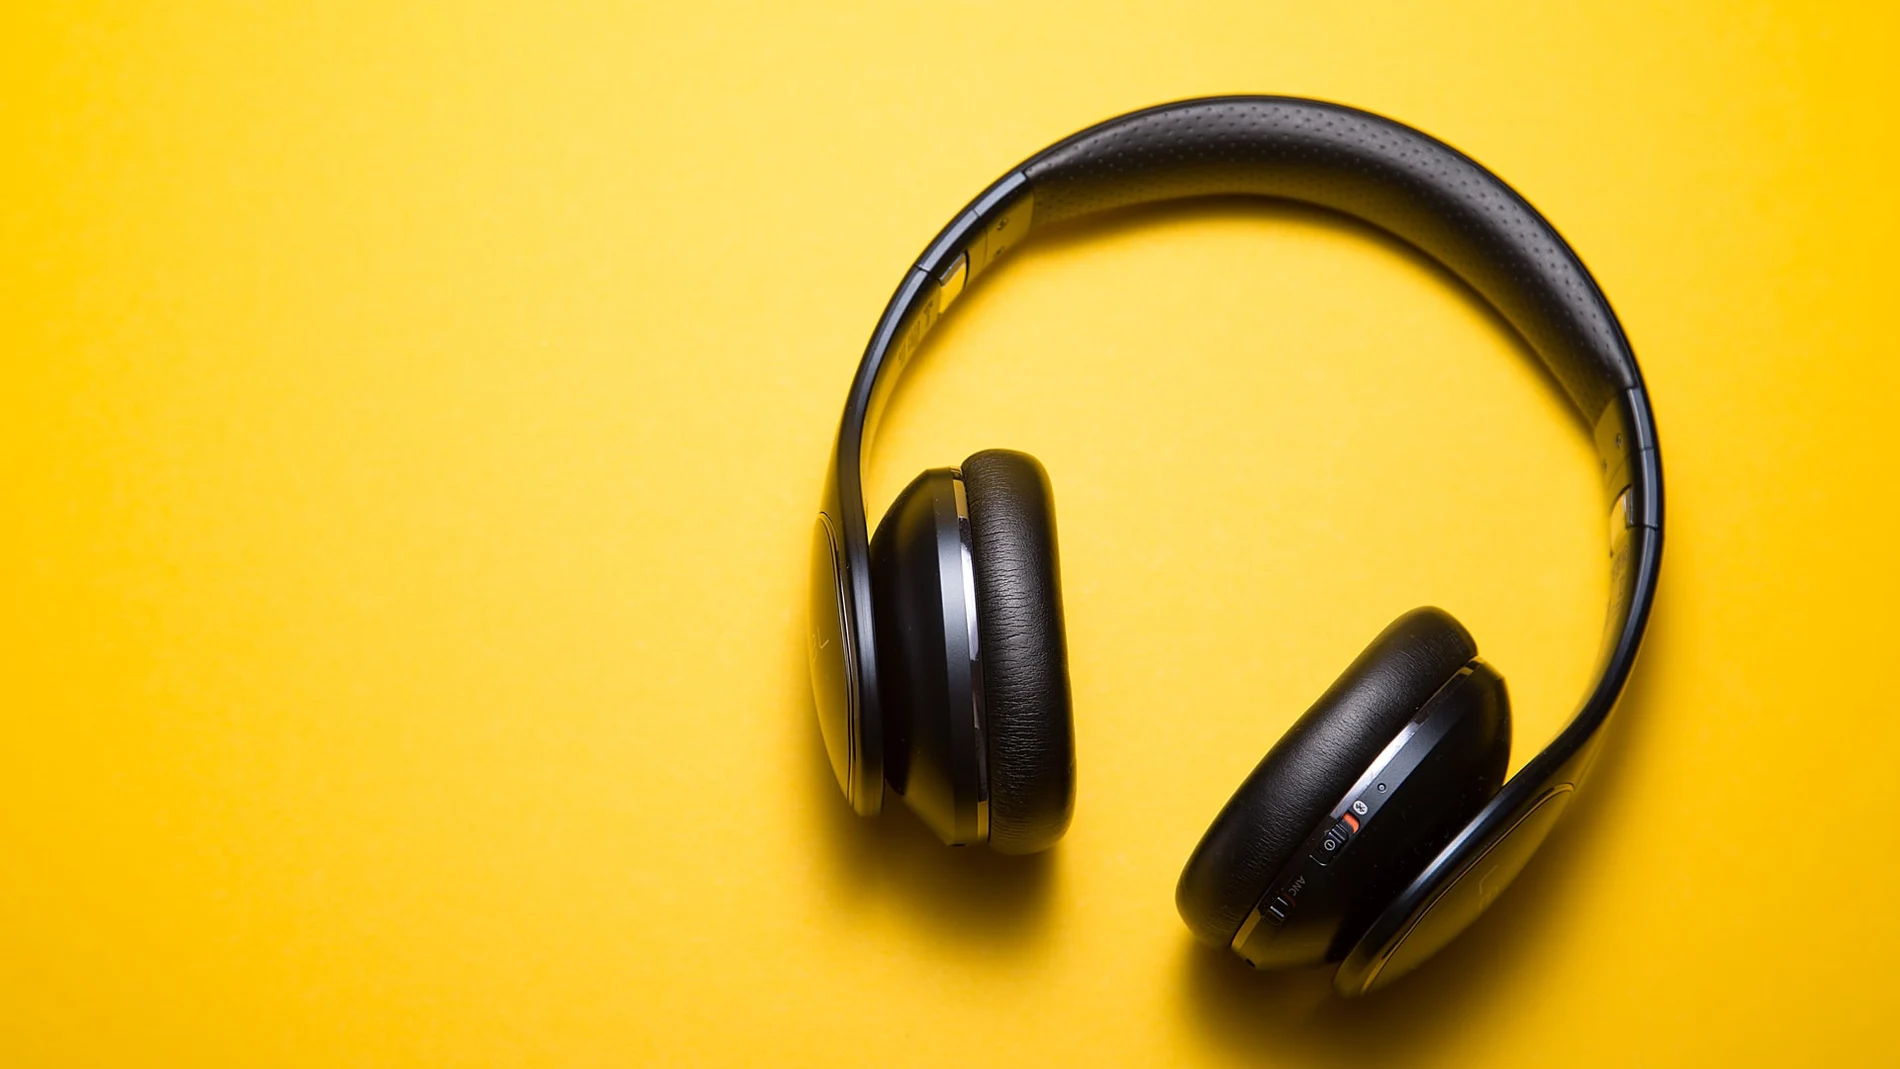 Dependiendo de la elección del códec de audio Bluetooth, tendrás una mejor o peor experiencia con unos auriculares inalámbricos.